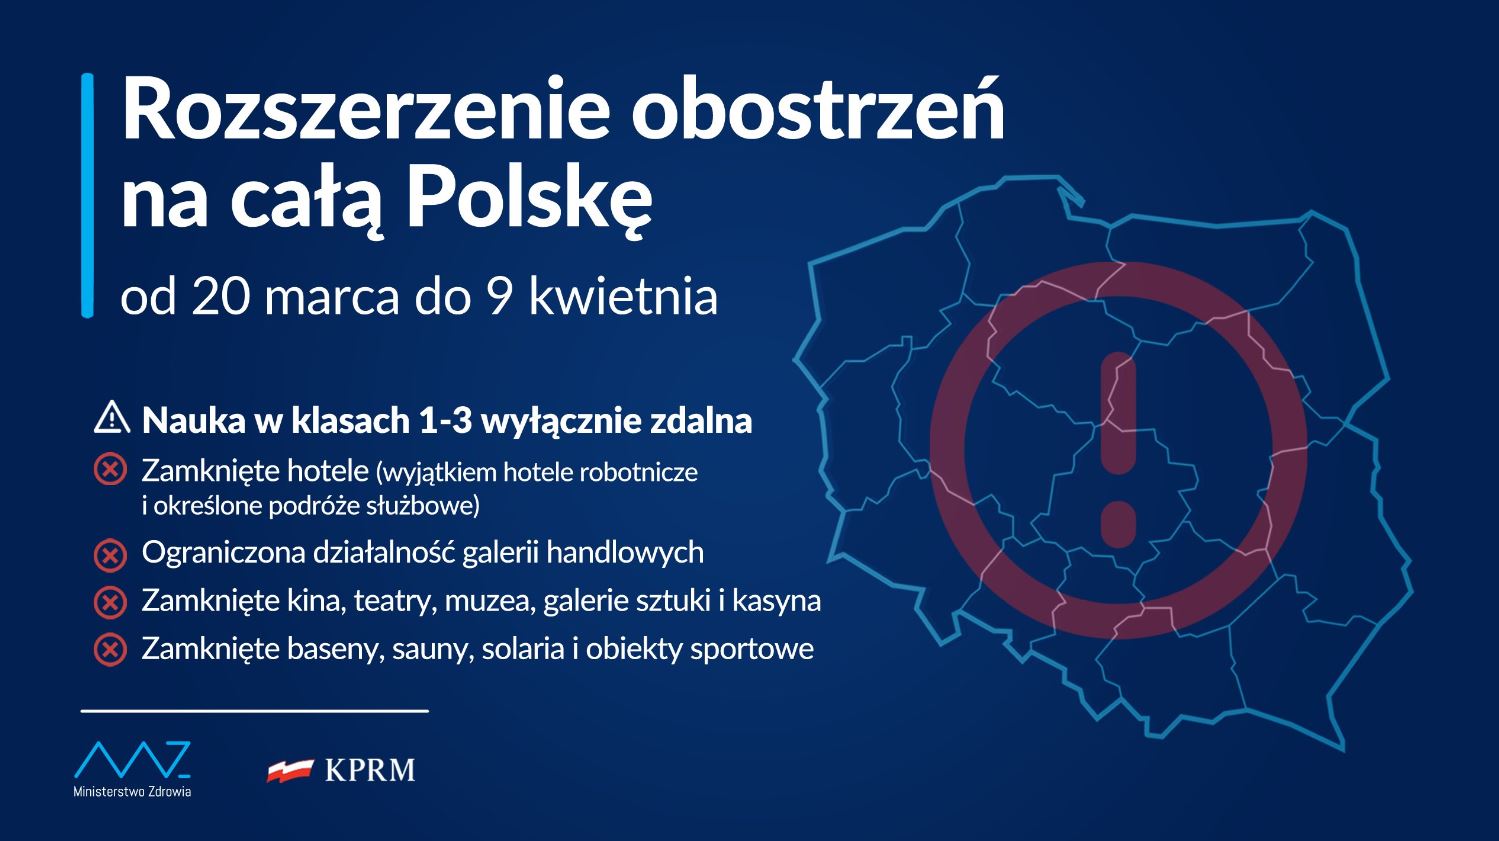 Środki ostrożności podczas epidemii Covid-19 w Polsce od 20 marca